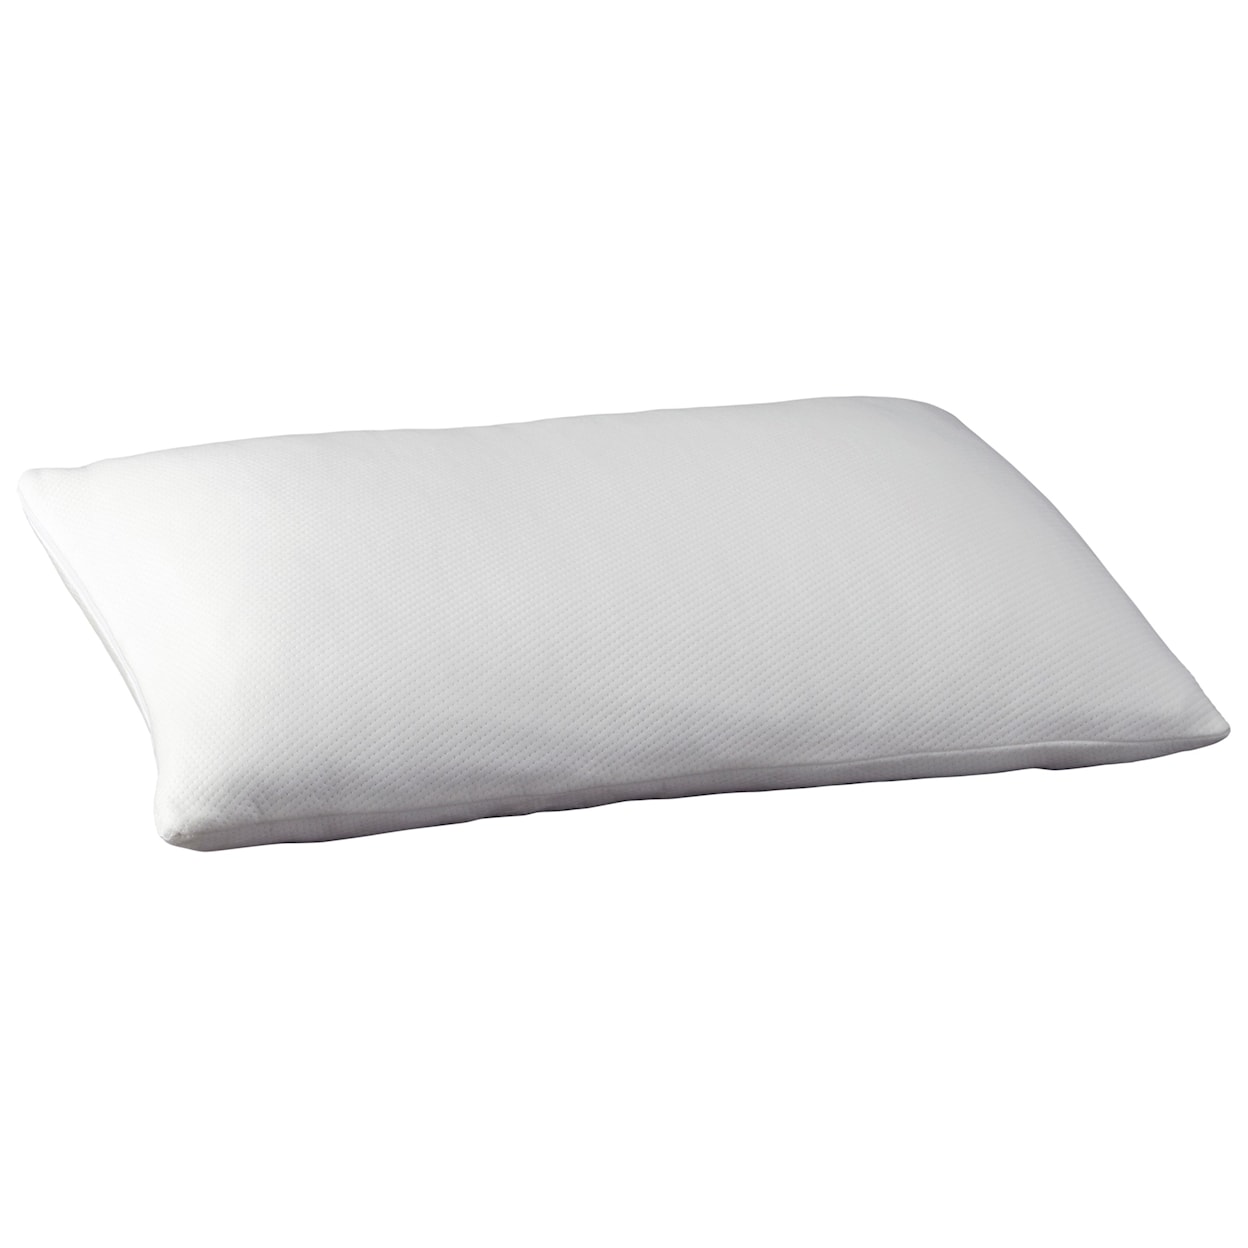 Sierra Sleep 2016 Pillows Memory Foam Pillow